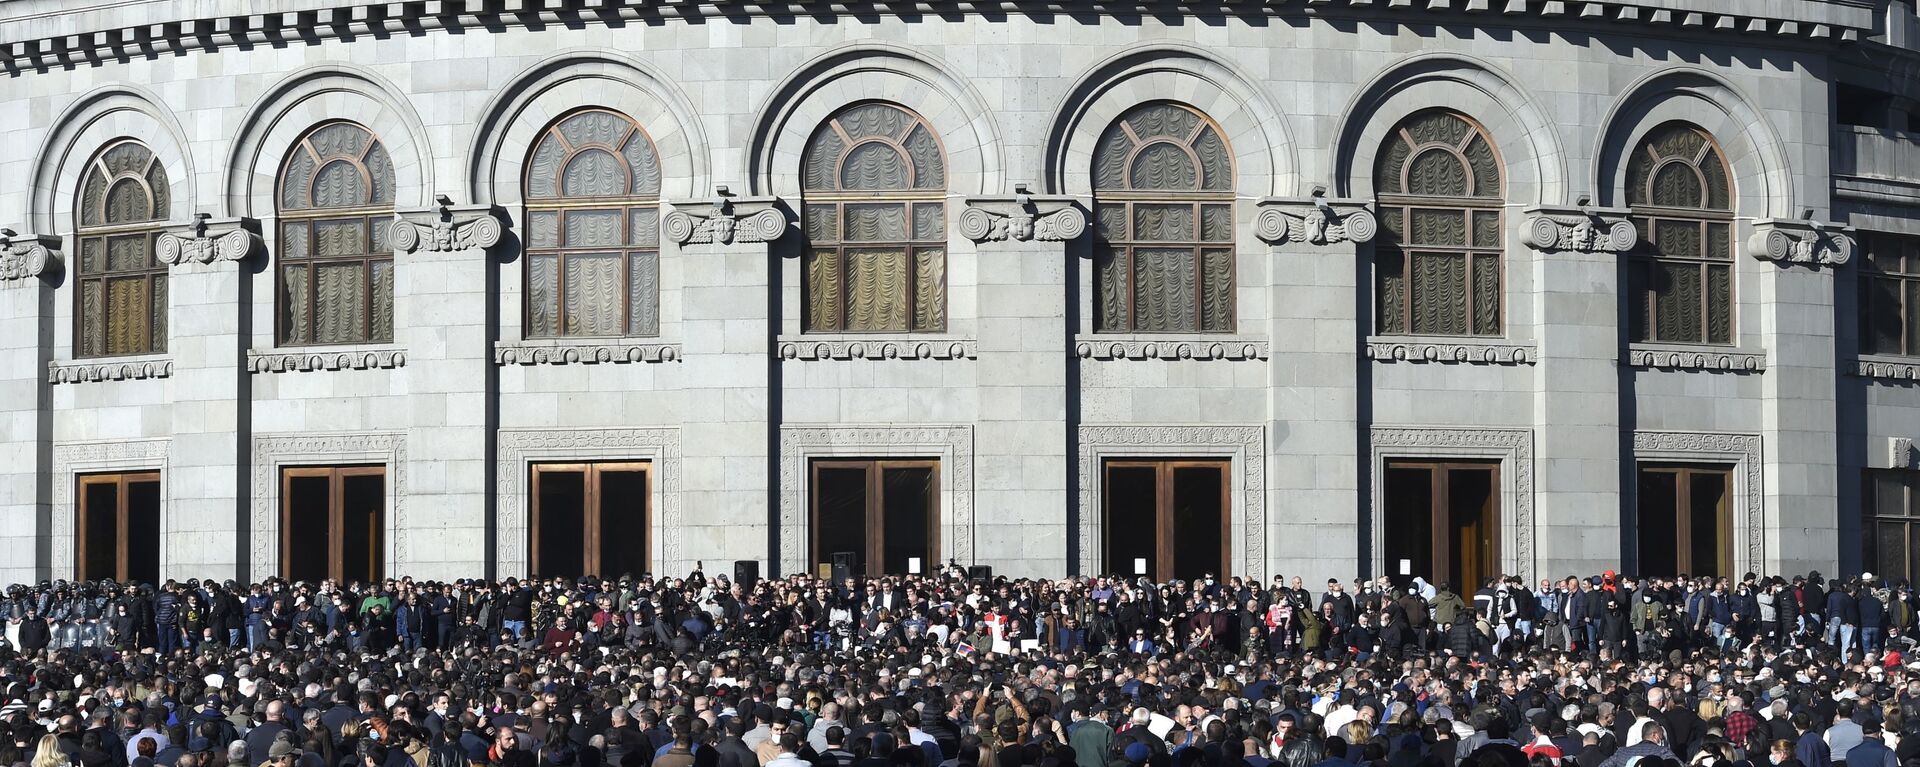 احتجاجات الآلاف في يريفان المطالبين بإقالة رئيس الوزراء نيكول باشينيان بسبب توقيع اتفاق لوقف إطلاق النار ضمن لأذربيجان تحقيق مكاسب ميدانية على الأرض في إقليم ناغورني قره باغ، أرمينيا 11 نوفمبر 2020 - سبوتنيك عربي, 1920, 22.06.2022